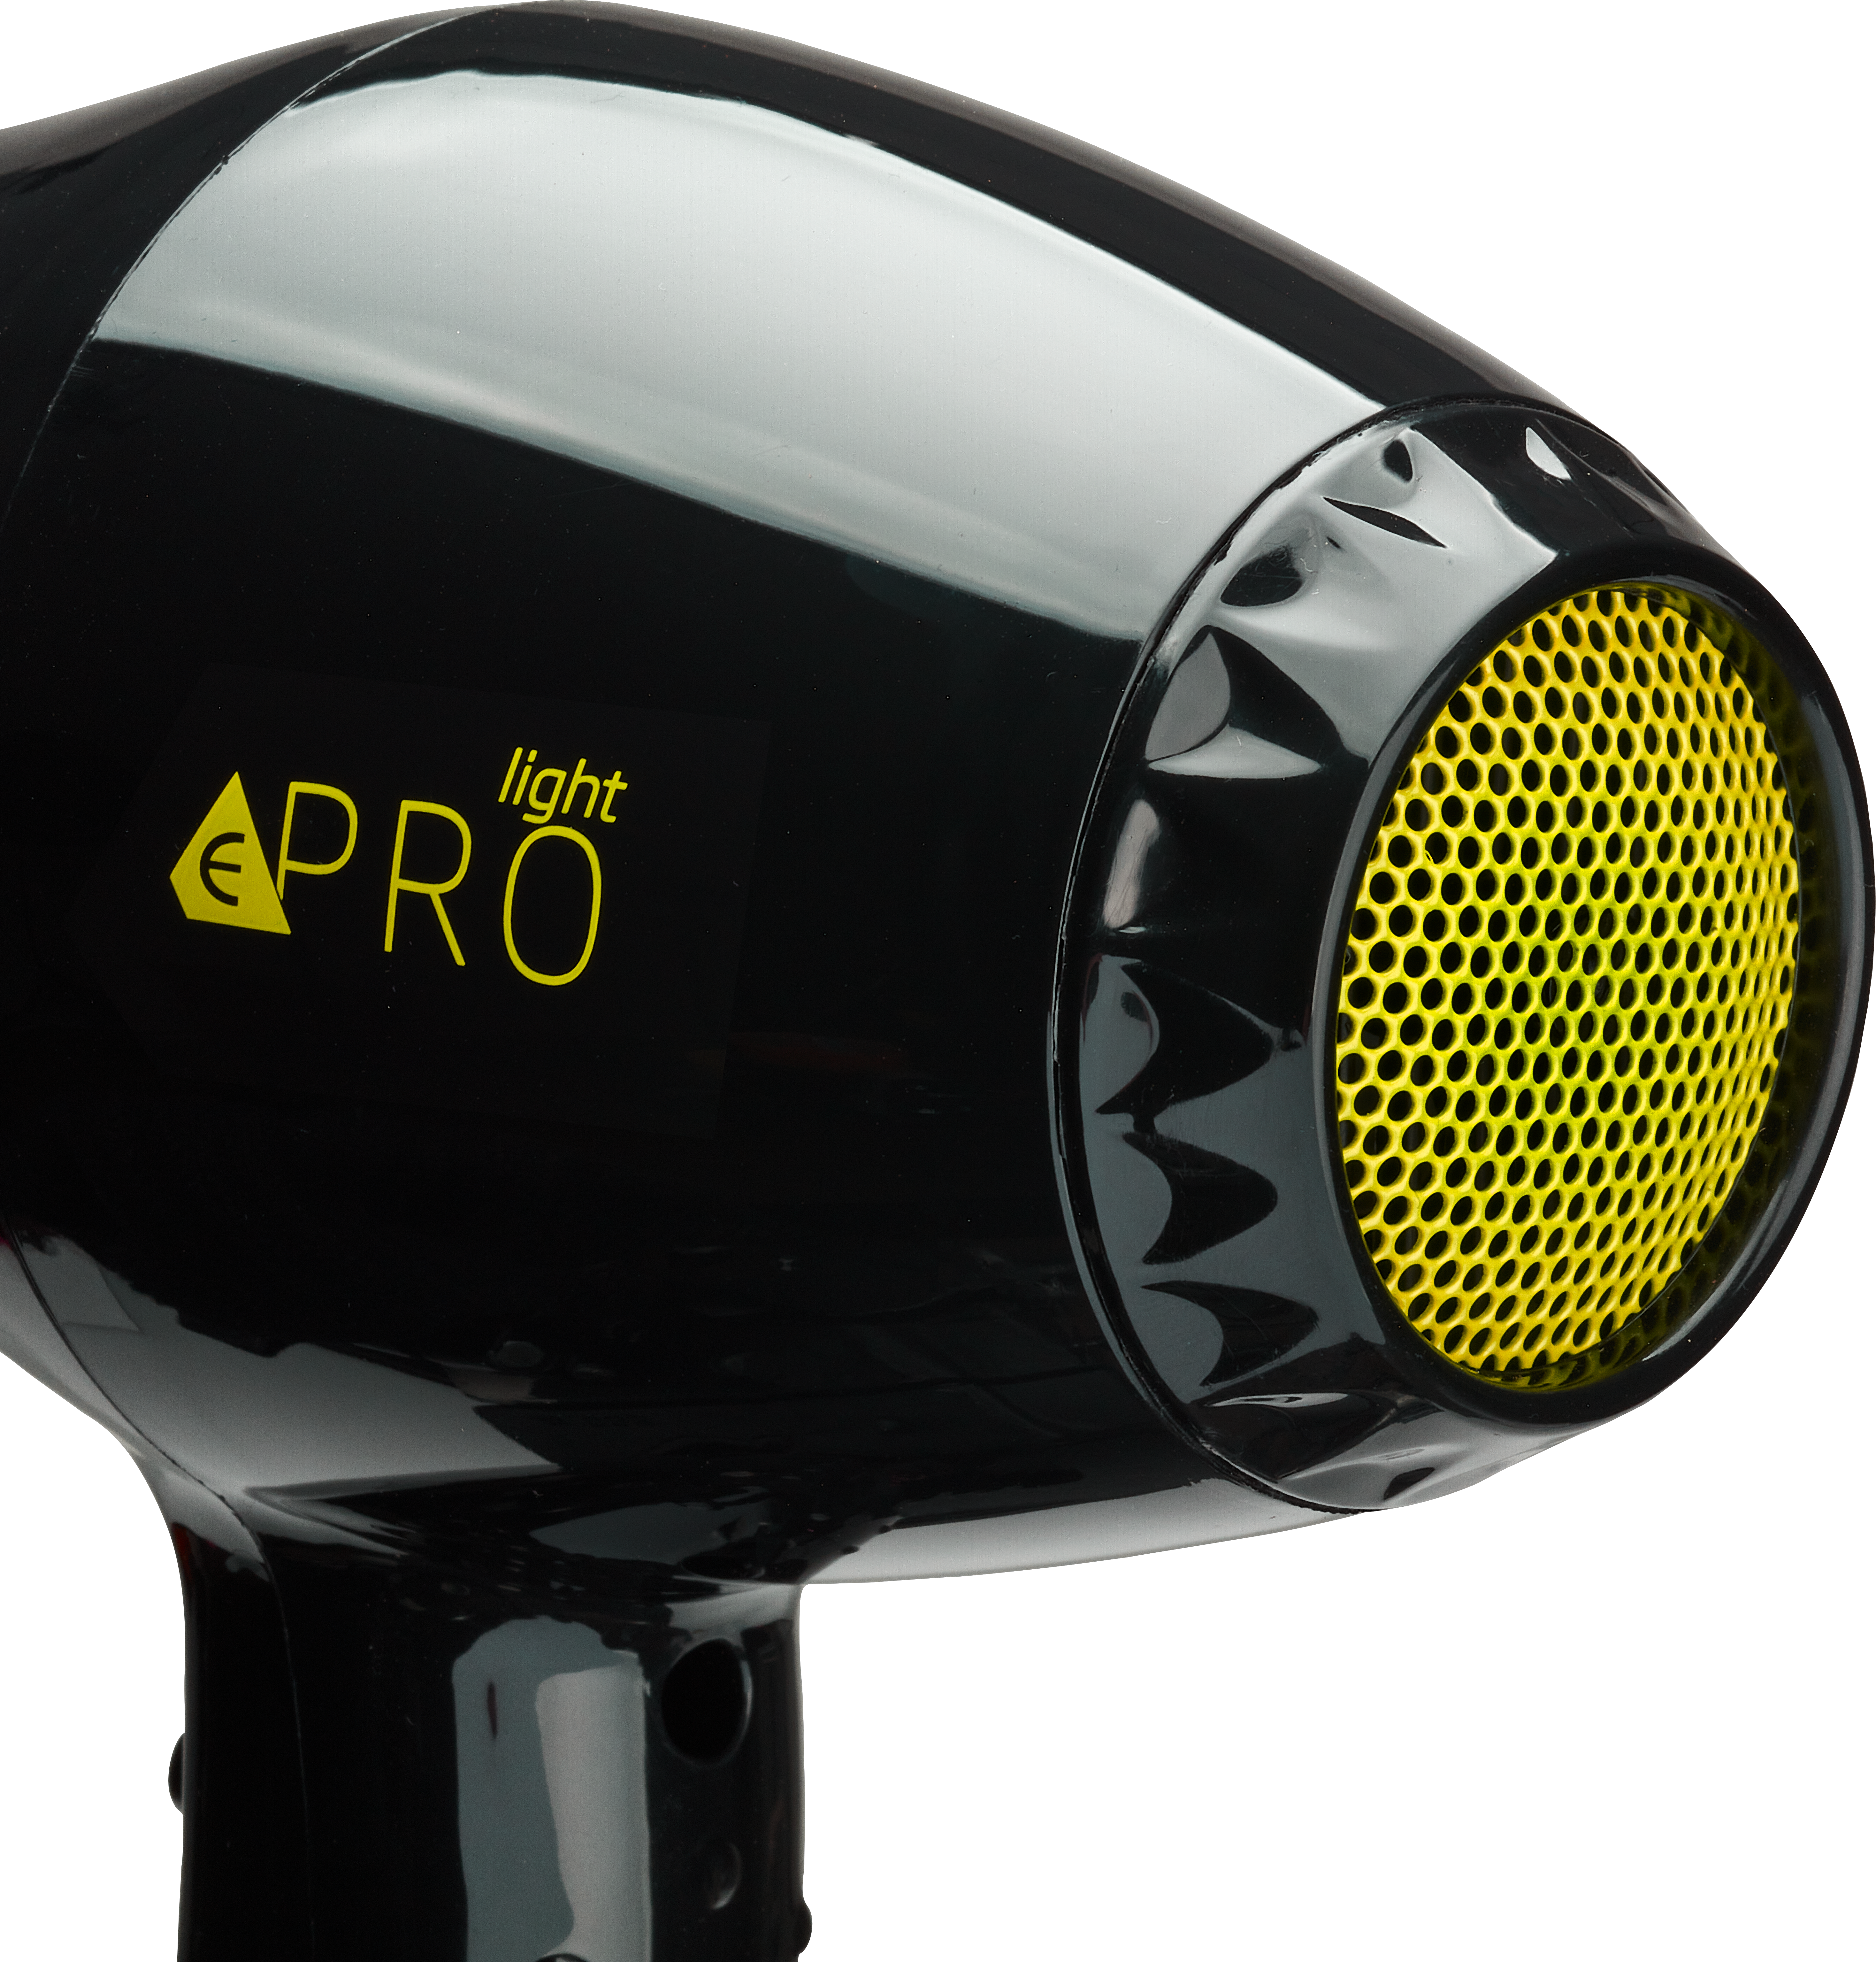 ePRO light Hair dryer